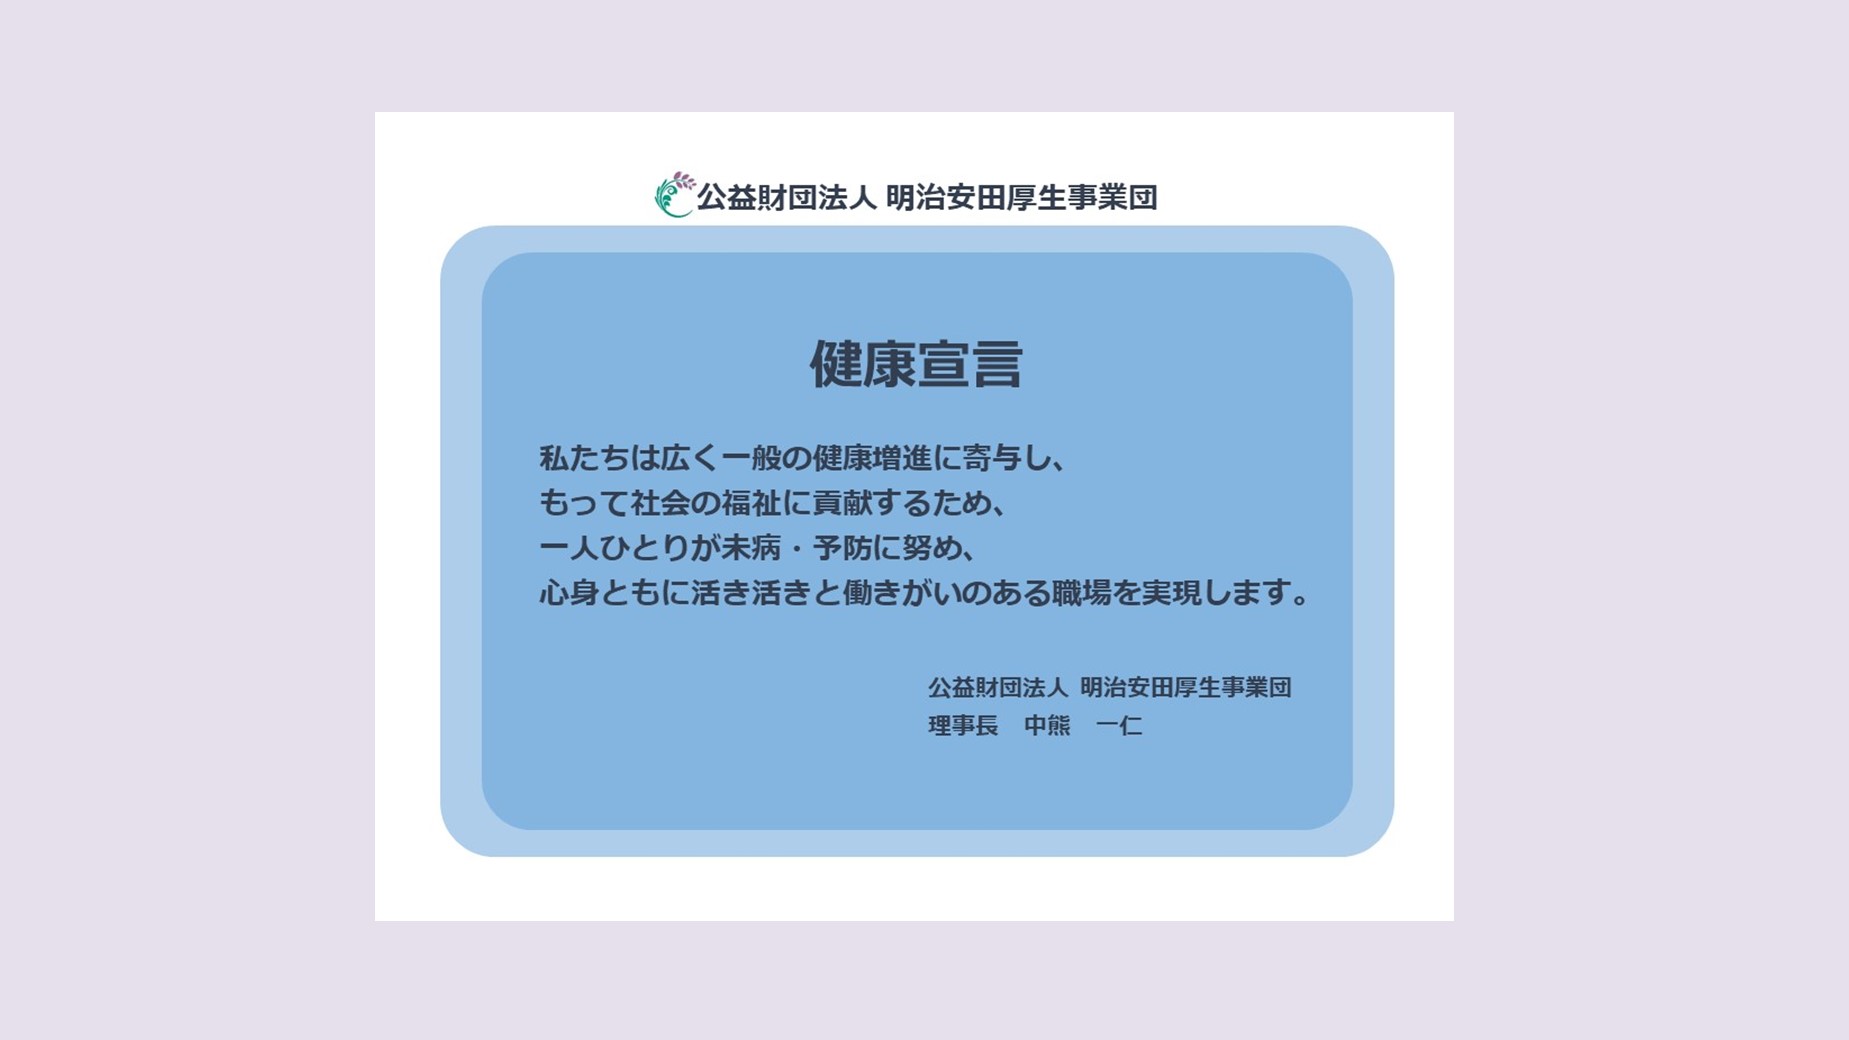 明治安田厚生事業団は「健康経営」を宣言しました